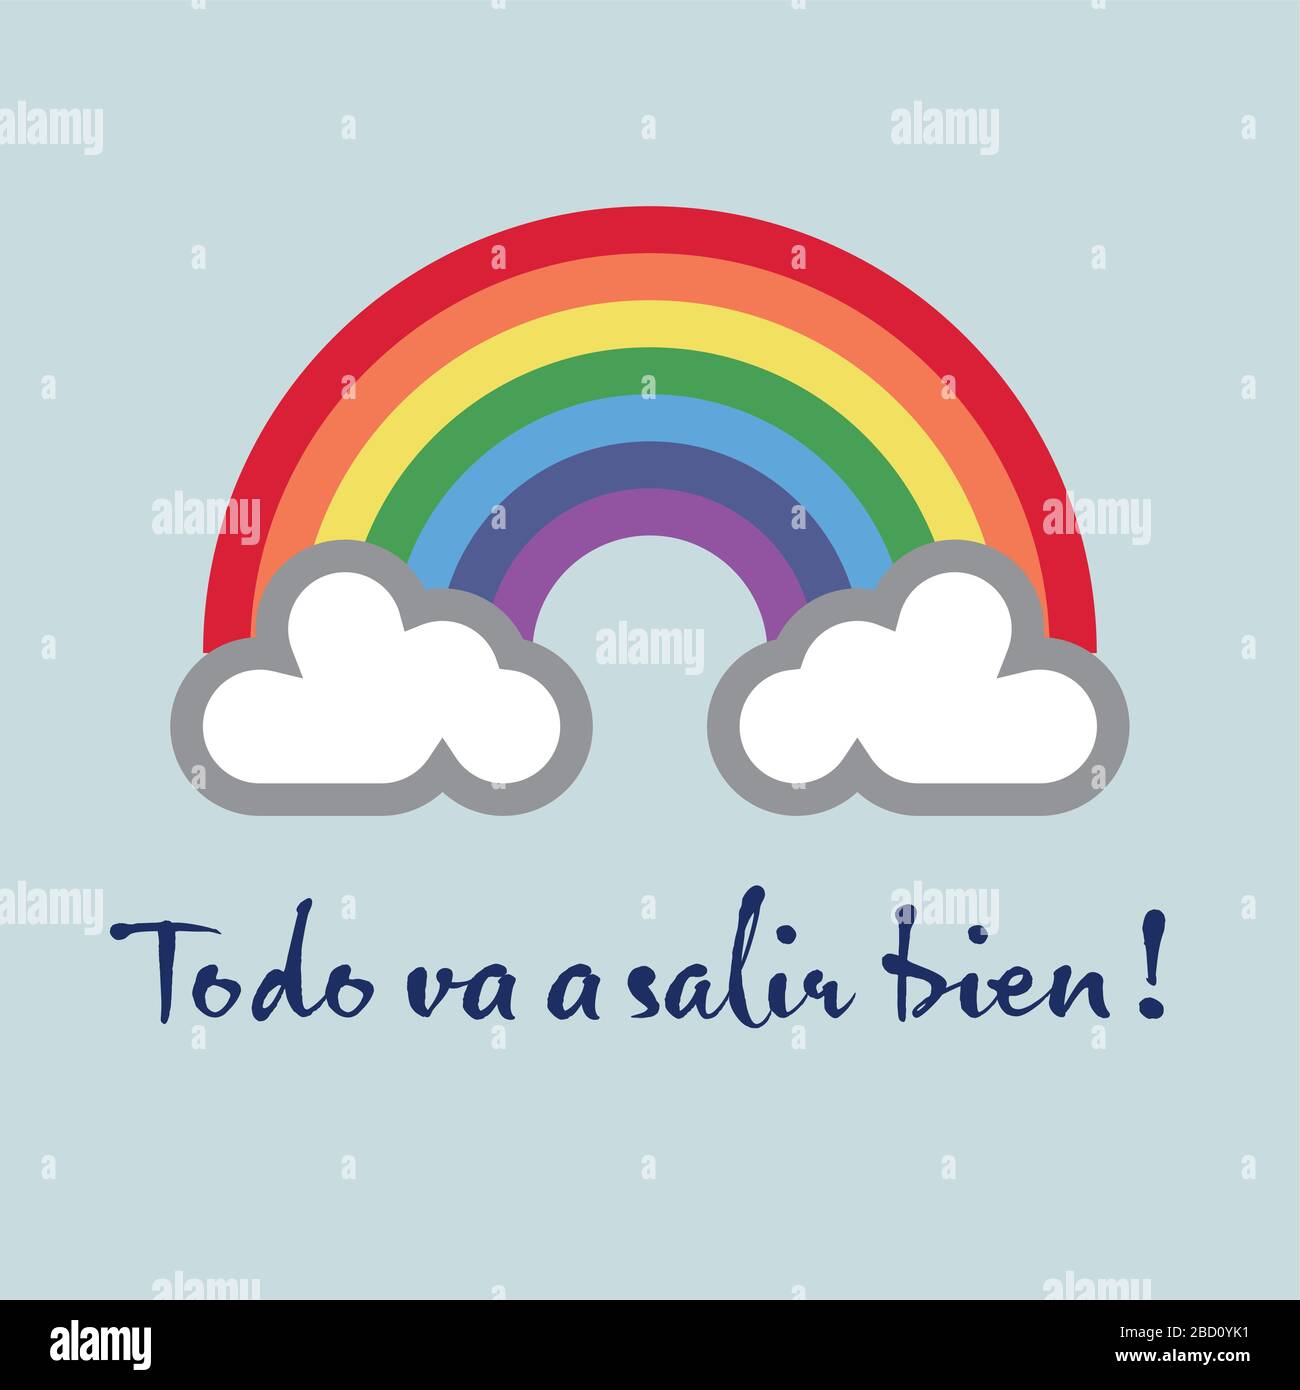 Ein Regenbogen für Hoffnung und Wunsch: Todo va a salir bien - alles wird in Ordnung sein Stock Vektor